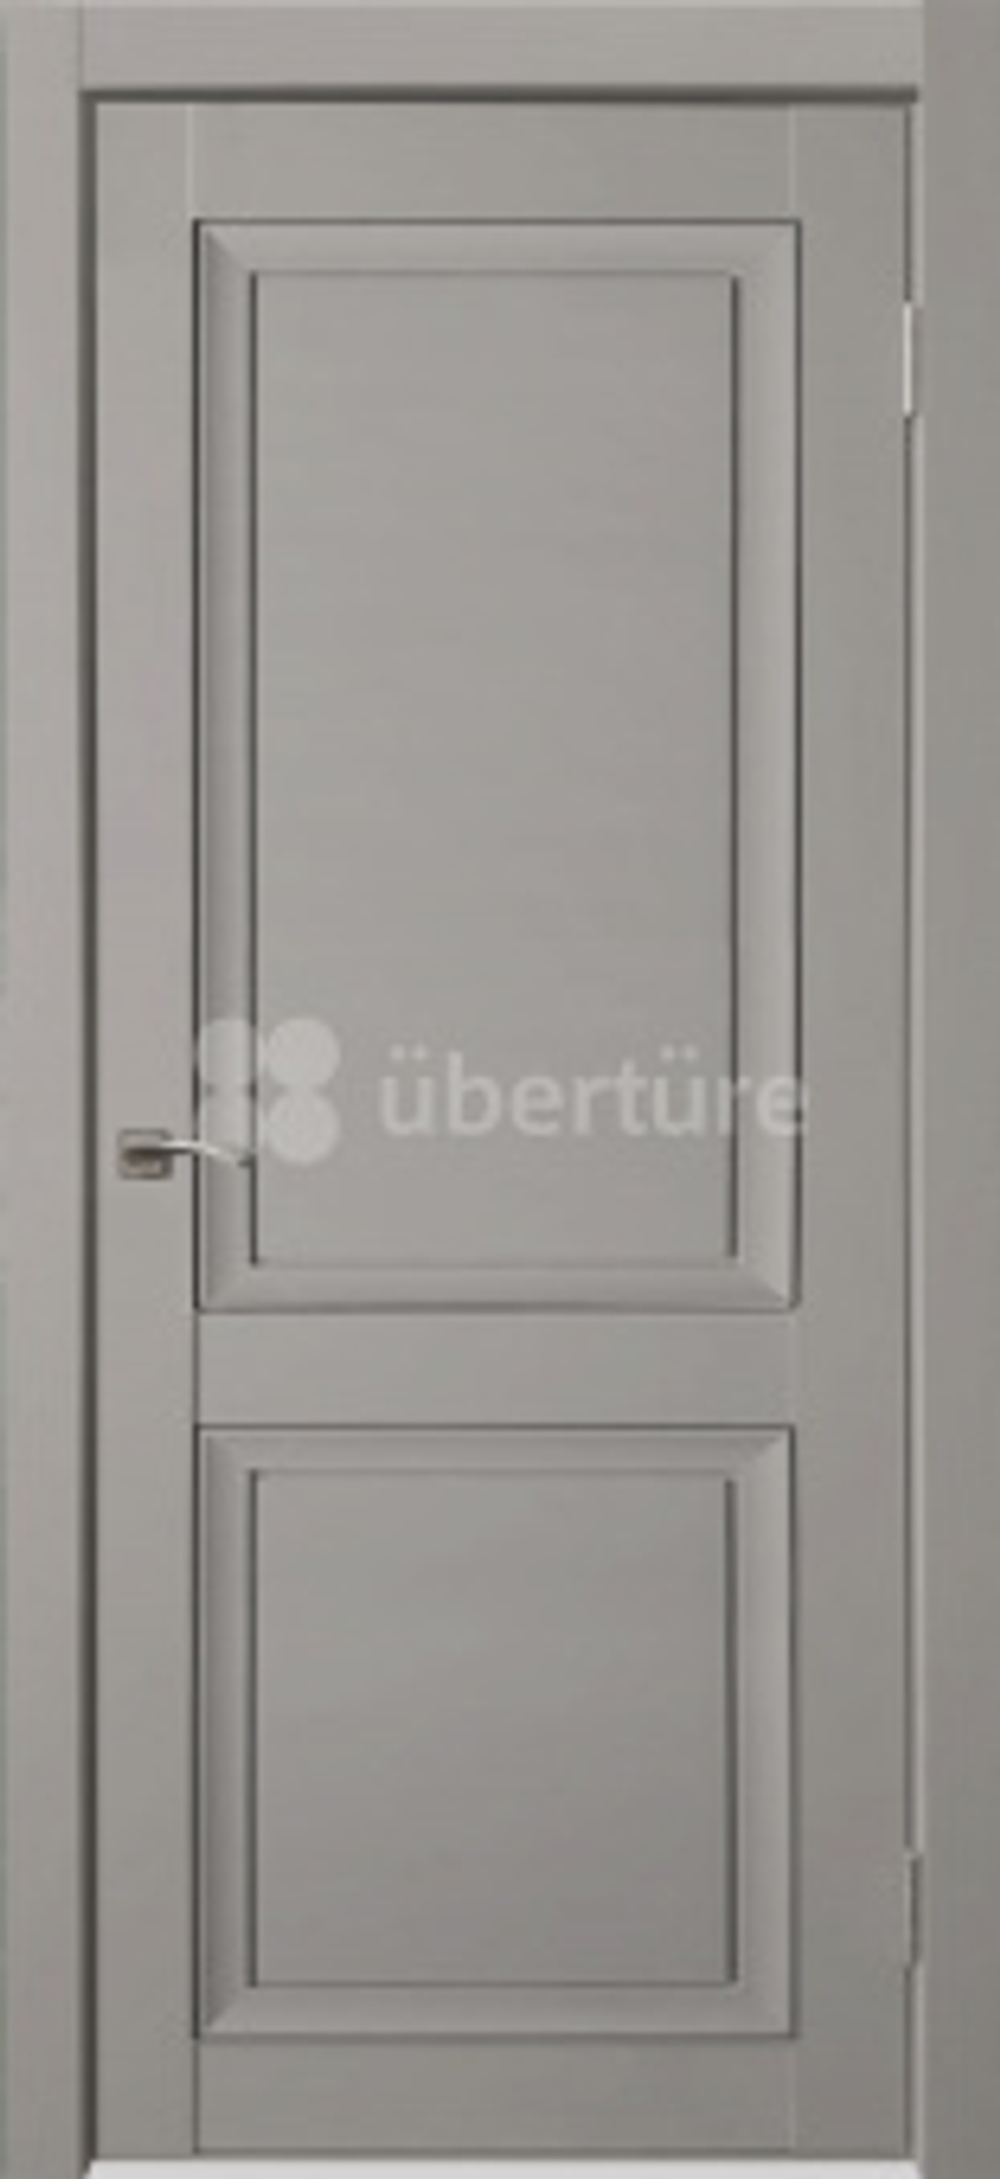 Межкомнатные двери Uberture Decanto, ПДГ 1, Barhat light grey